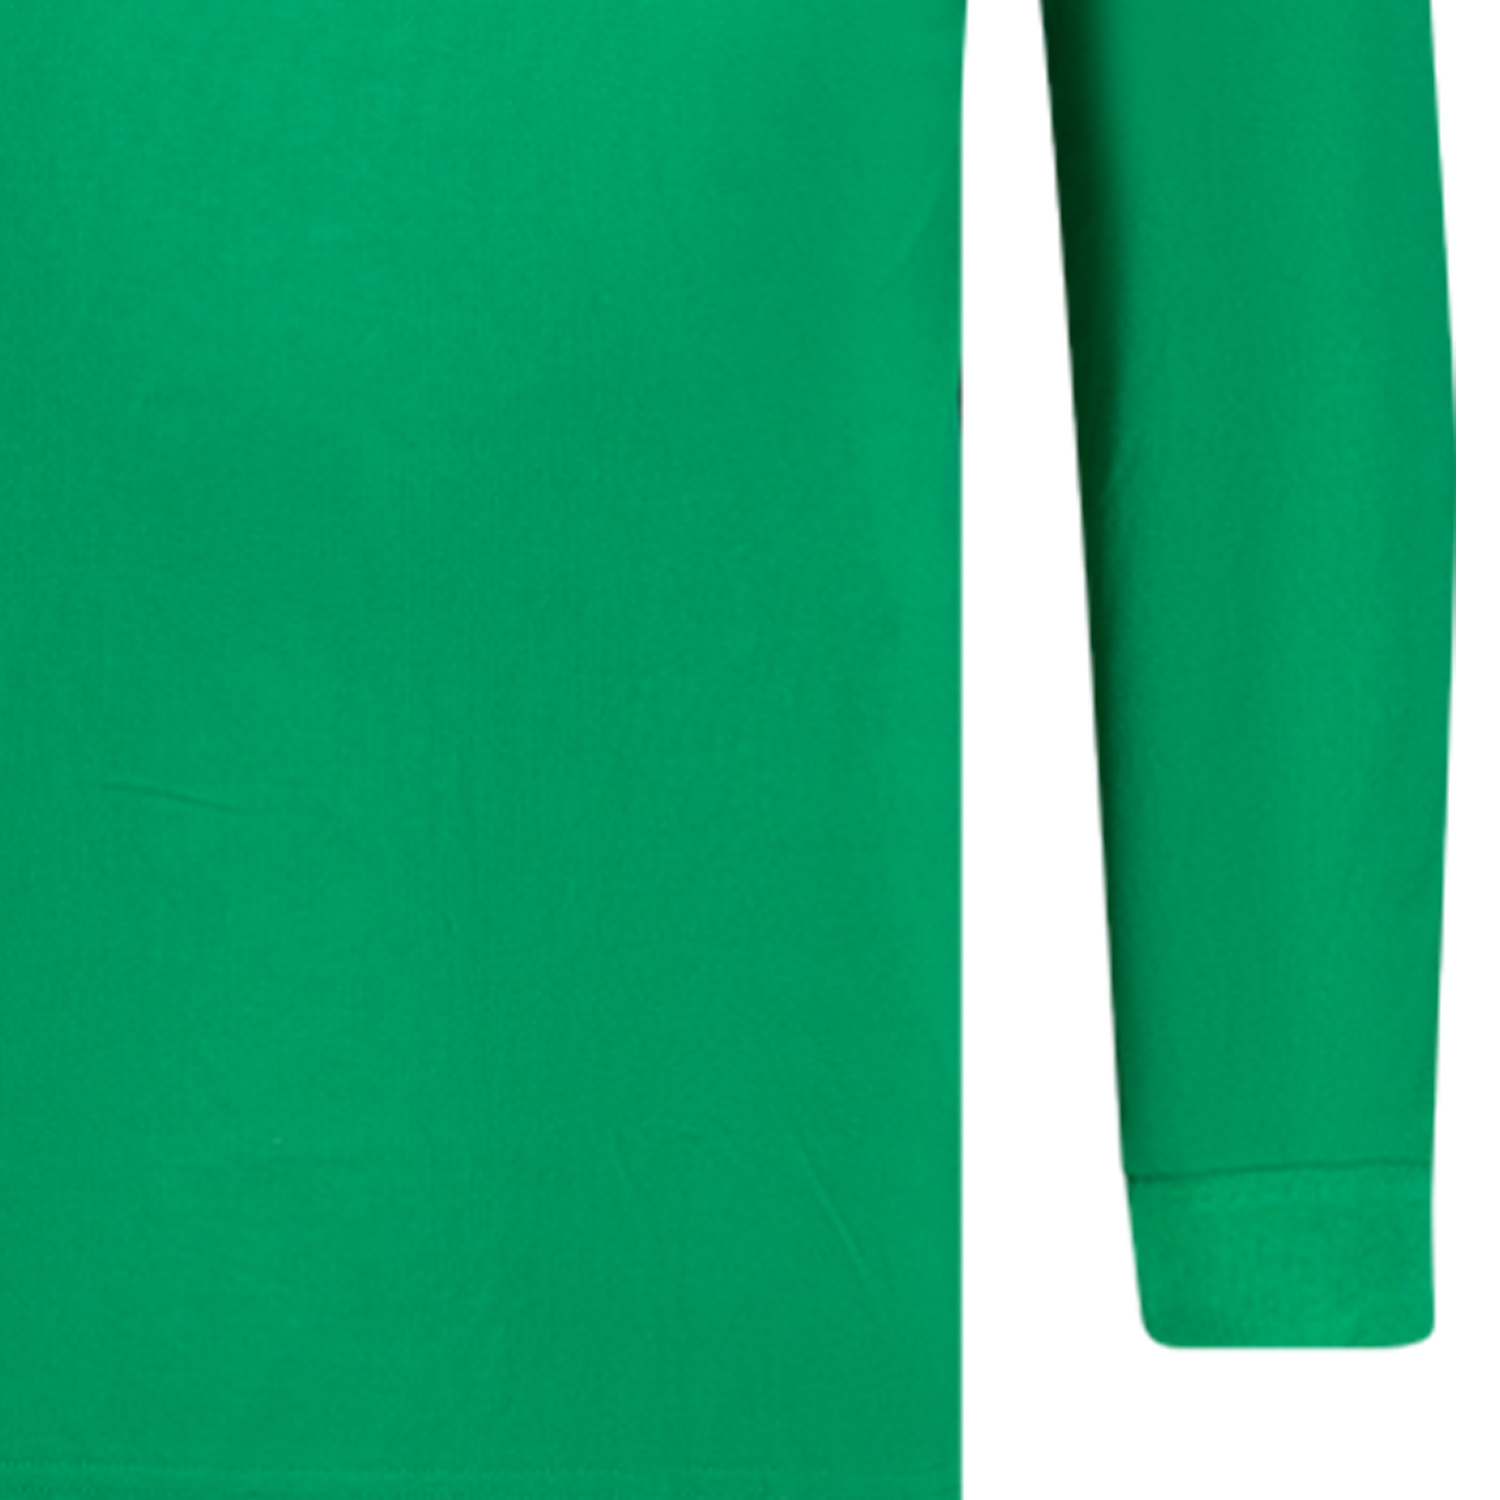 Herren Pique Poloshirt langarm COMFORT FI in grün Serie Peter von Adamo in großen Größen XXL bis 12XL